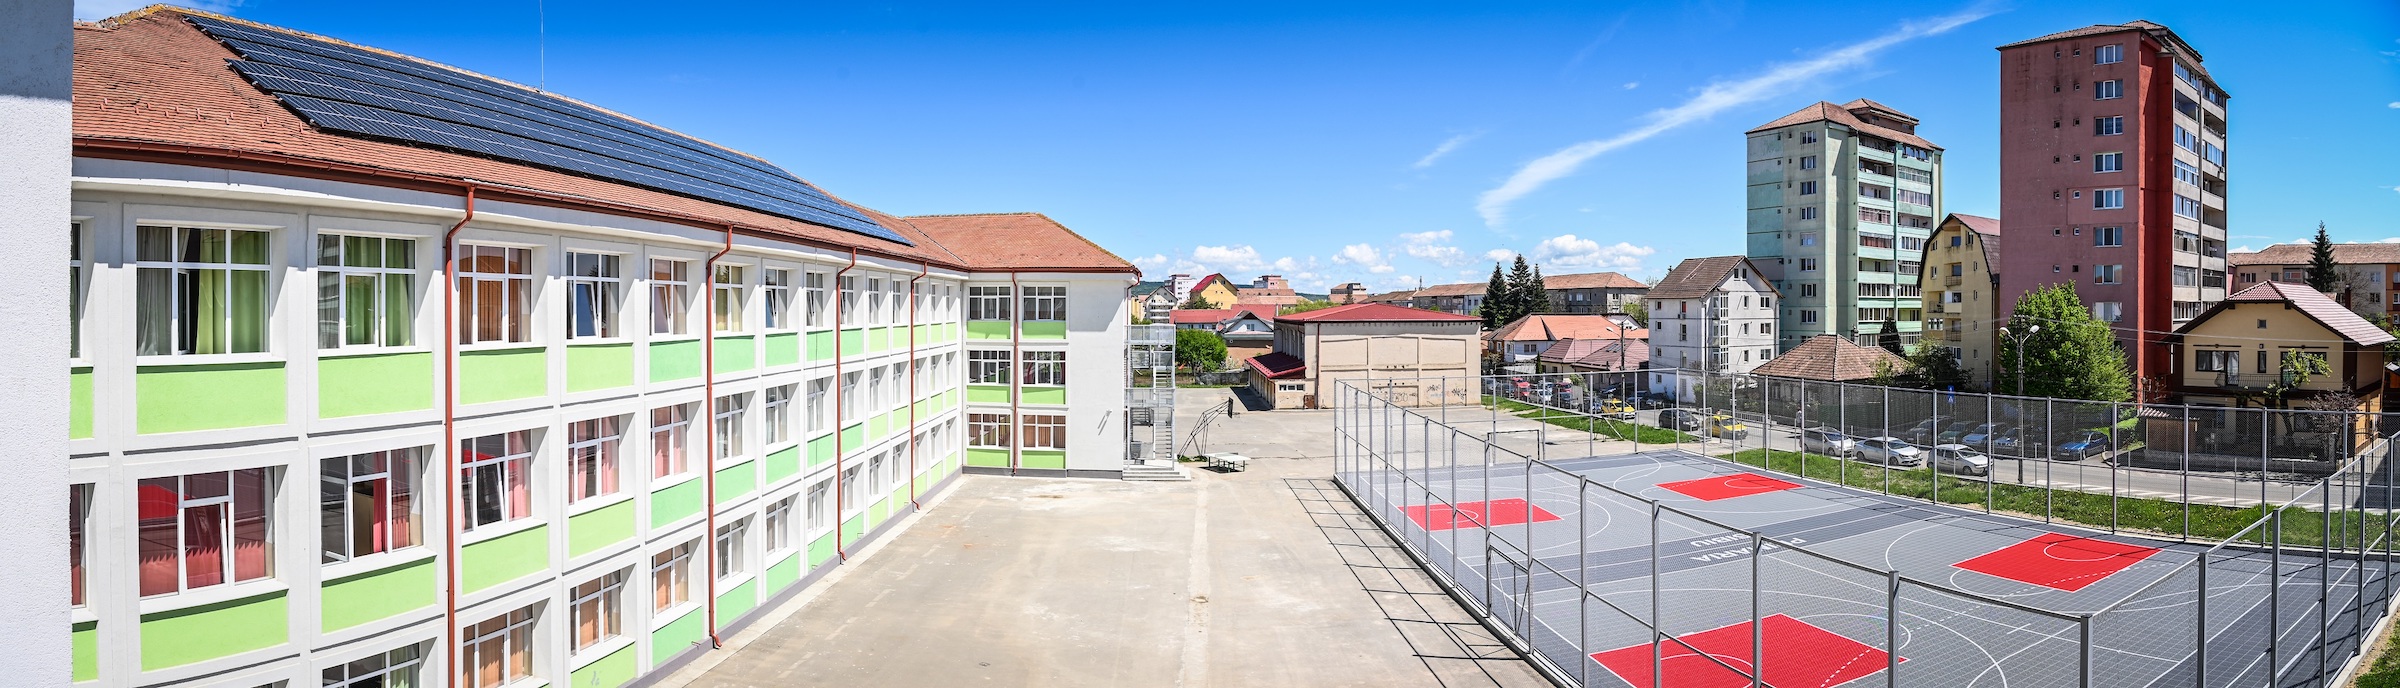 ISJ Sibiu, despre noua evaluare standardizată: „Deocamdată nu știm cum vor arăta testările”. 7 școli din Sibiu în proiectul pilot